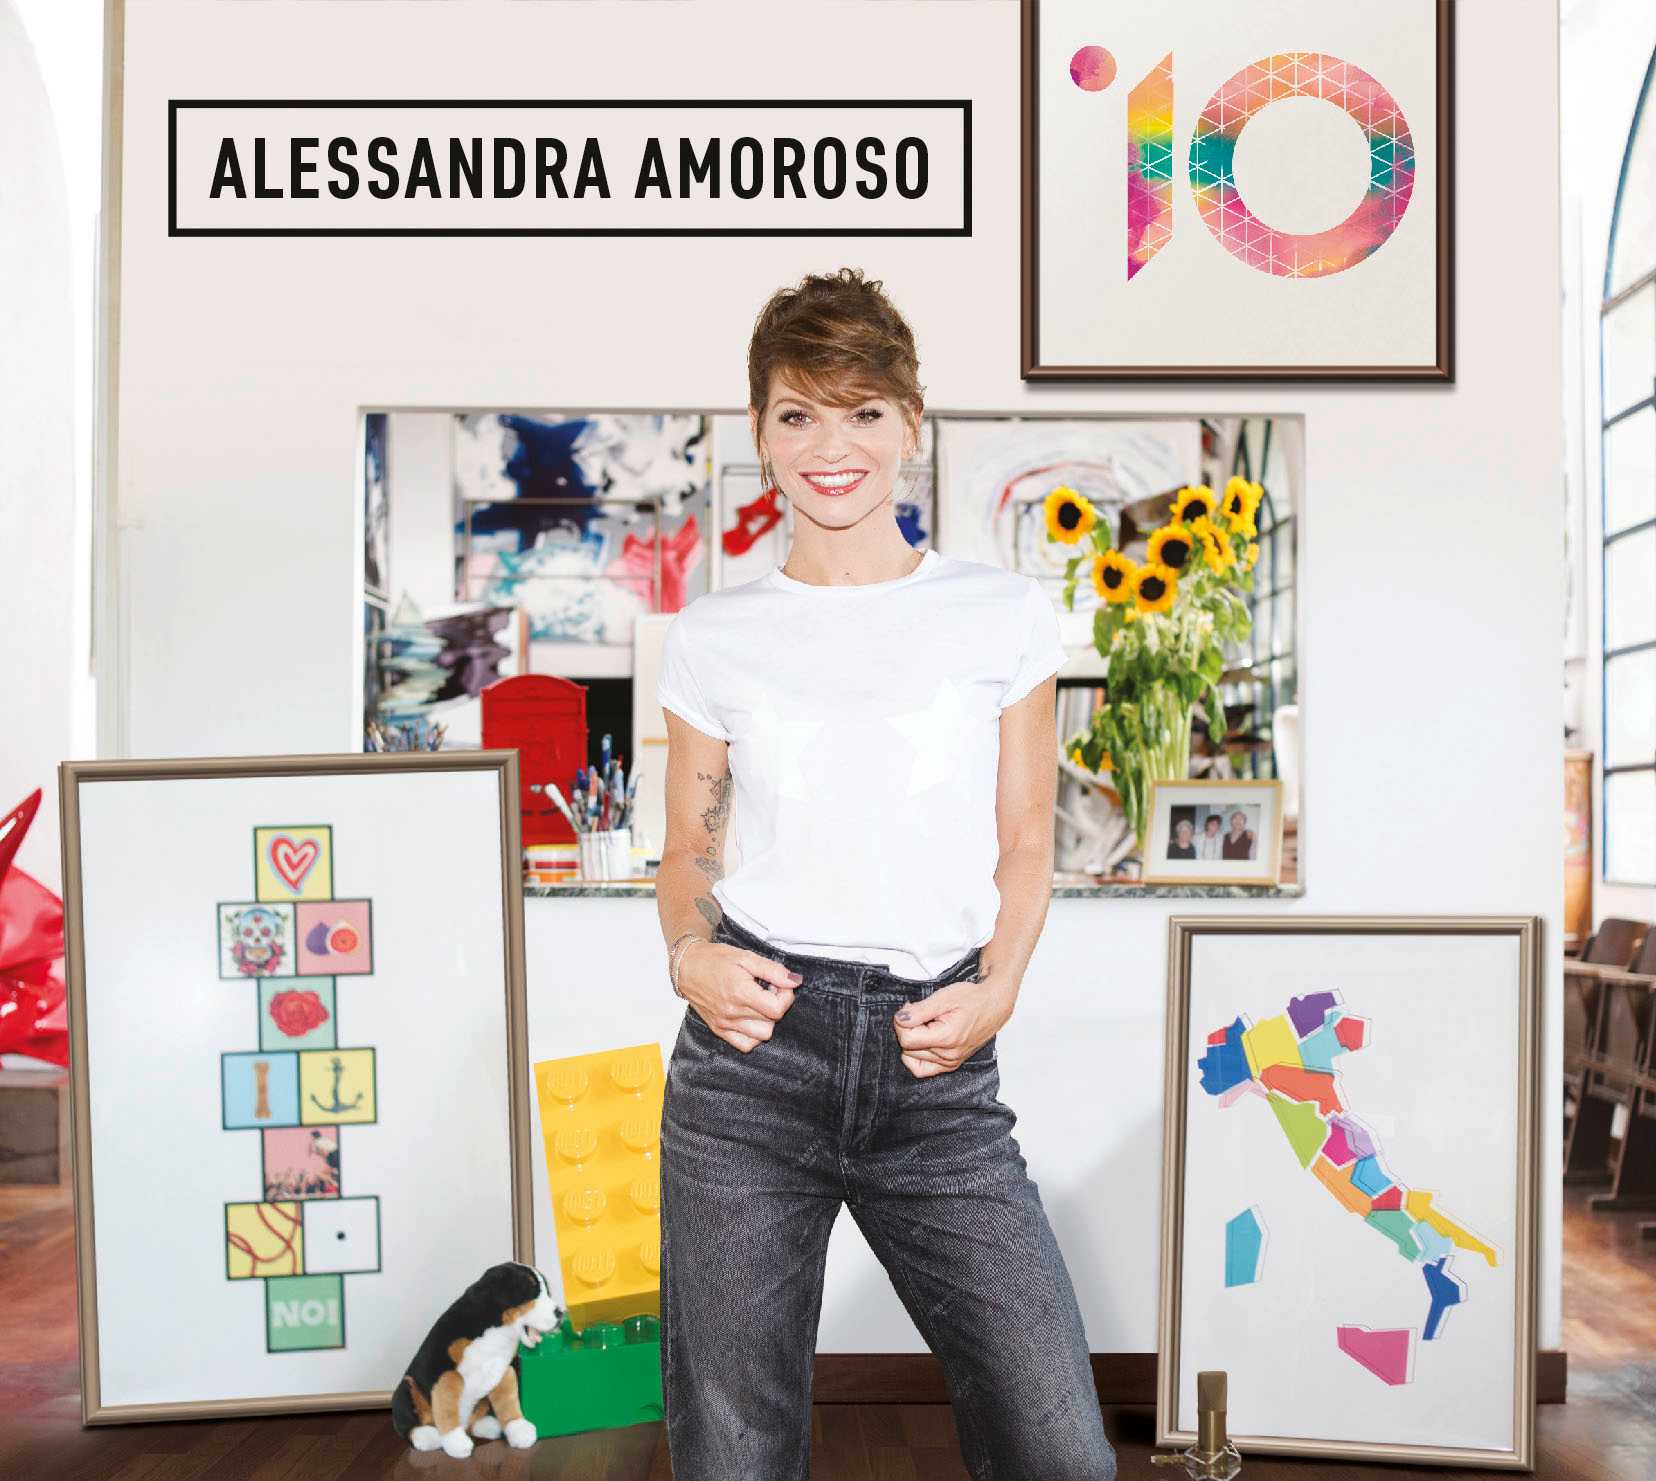 A Reggio Calabria arriva Alessandra Amoroso con il suo nuovo album di inediti “10